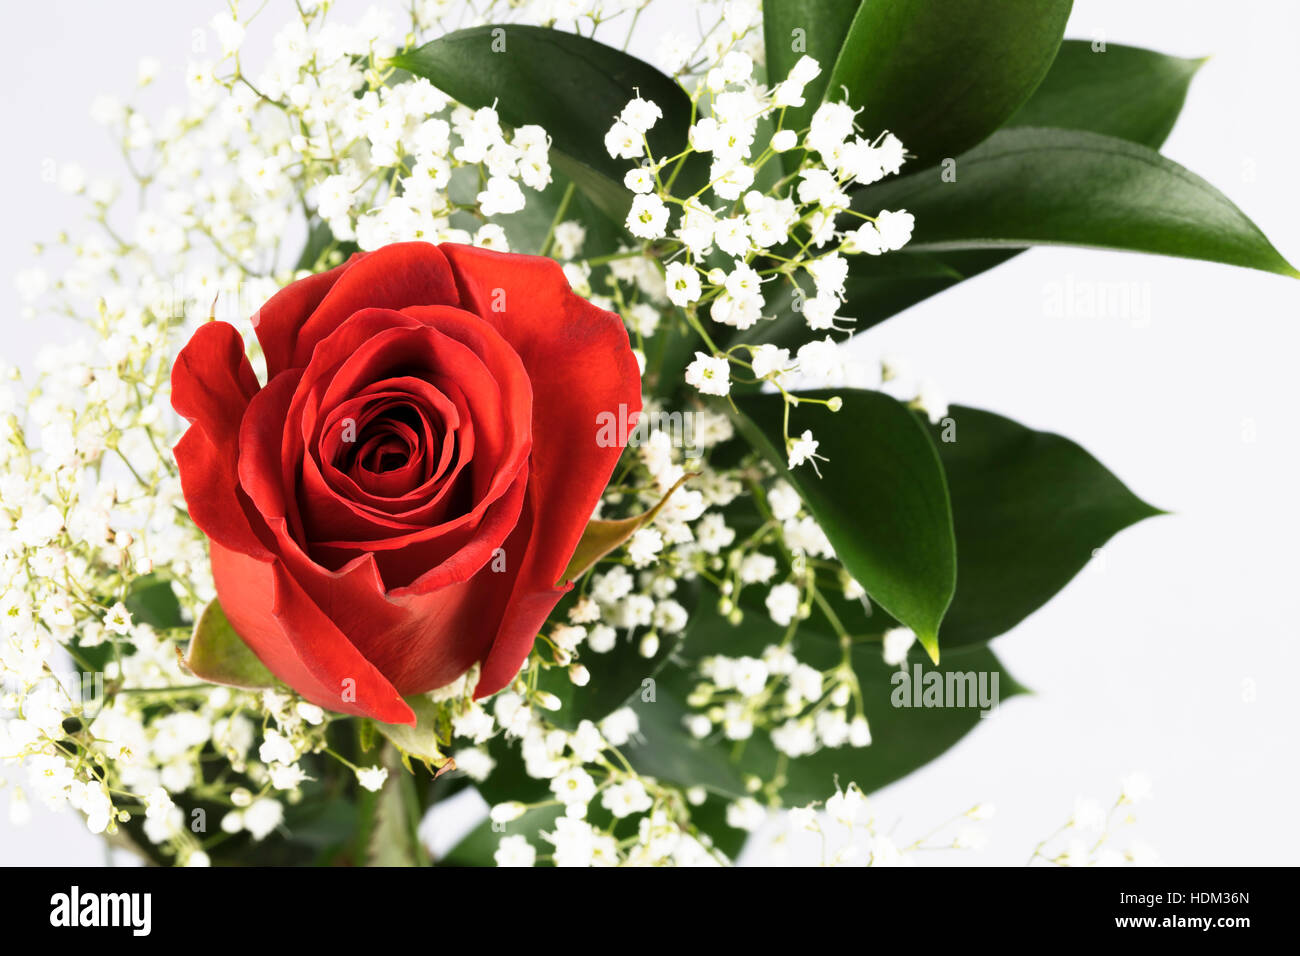 Romantische rote Rosen mit Schleierkraut Stockfotografie - Alamy